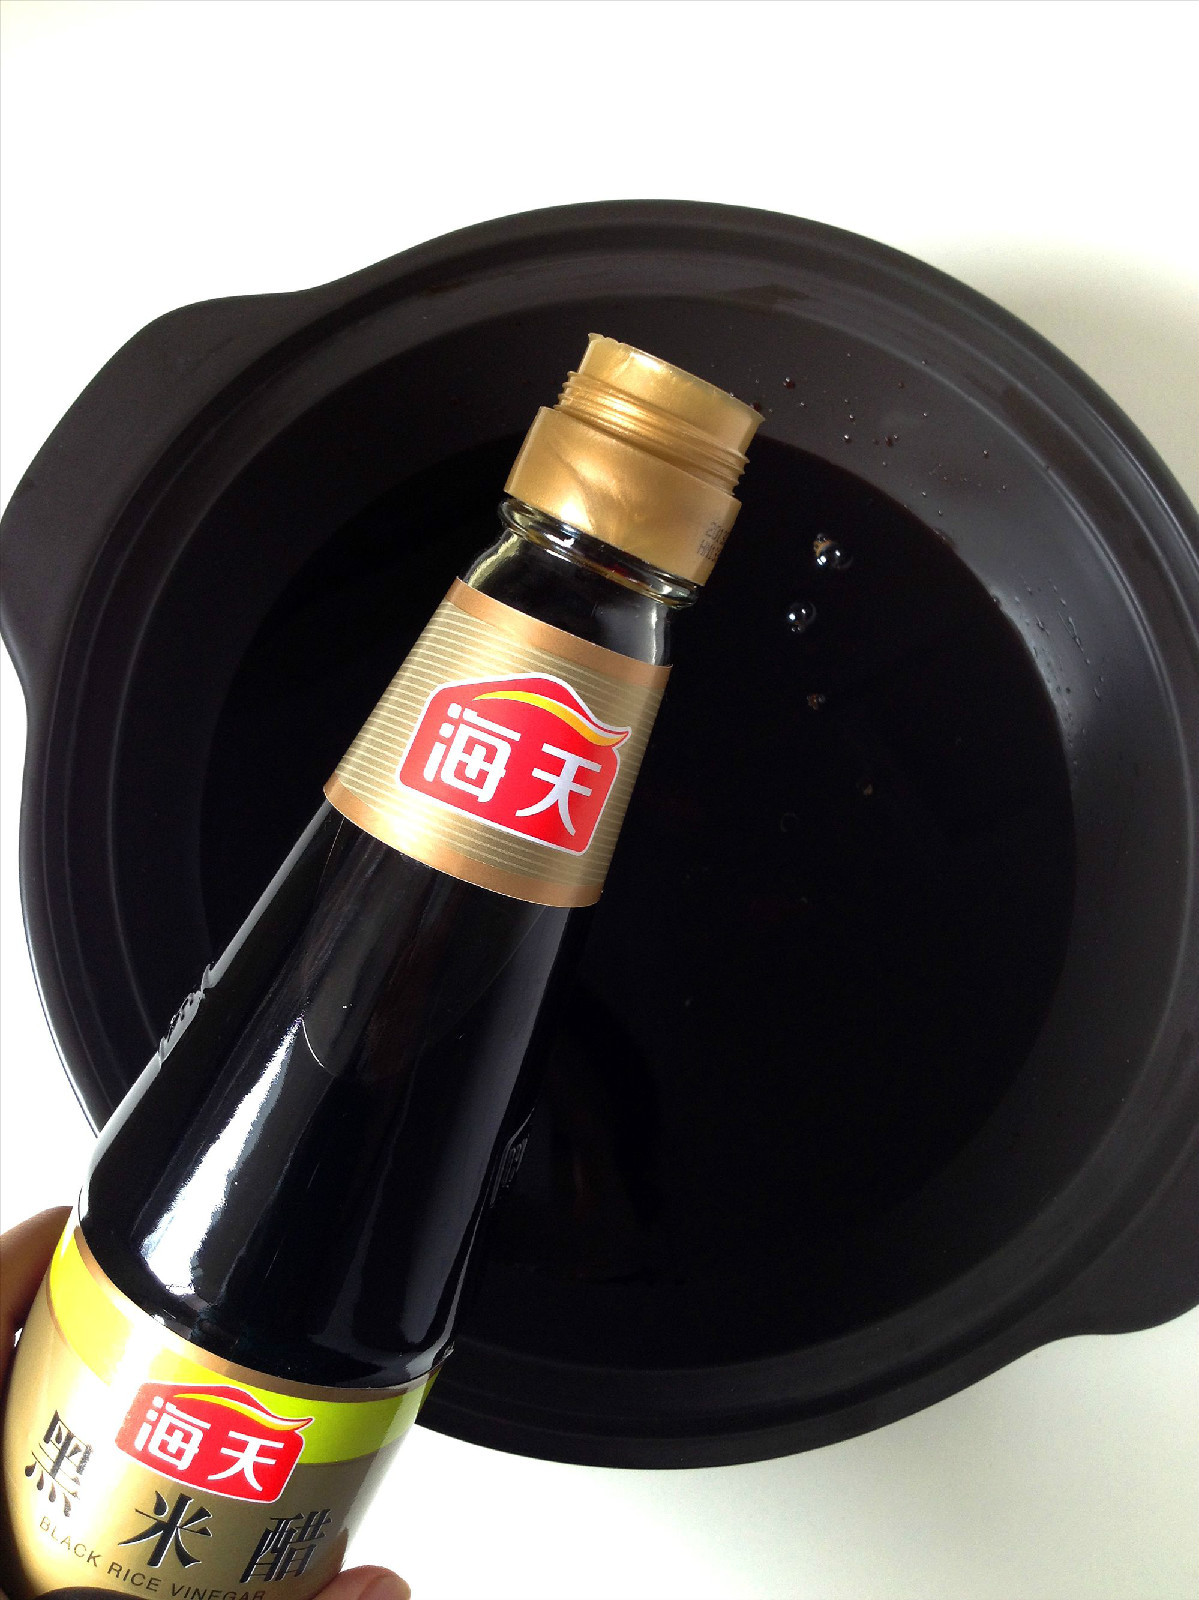 冠珍 添丁甜醋 - 16.9 fl oz (500 ml) - Well Come Asian Market